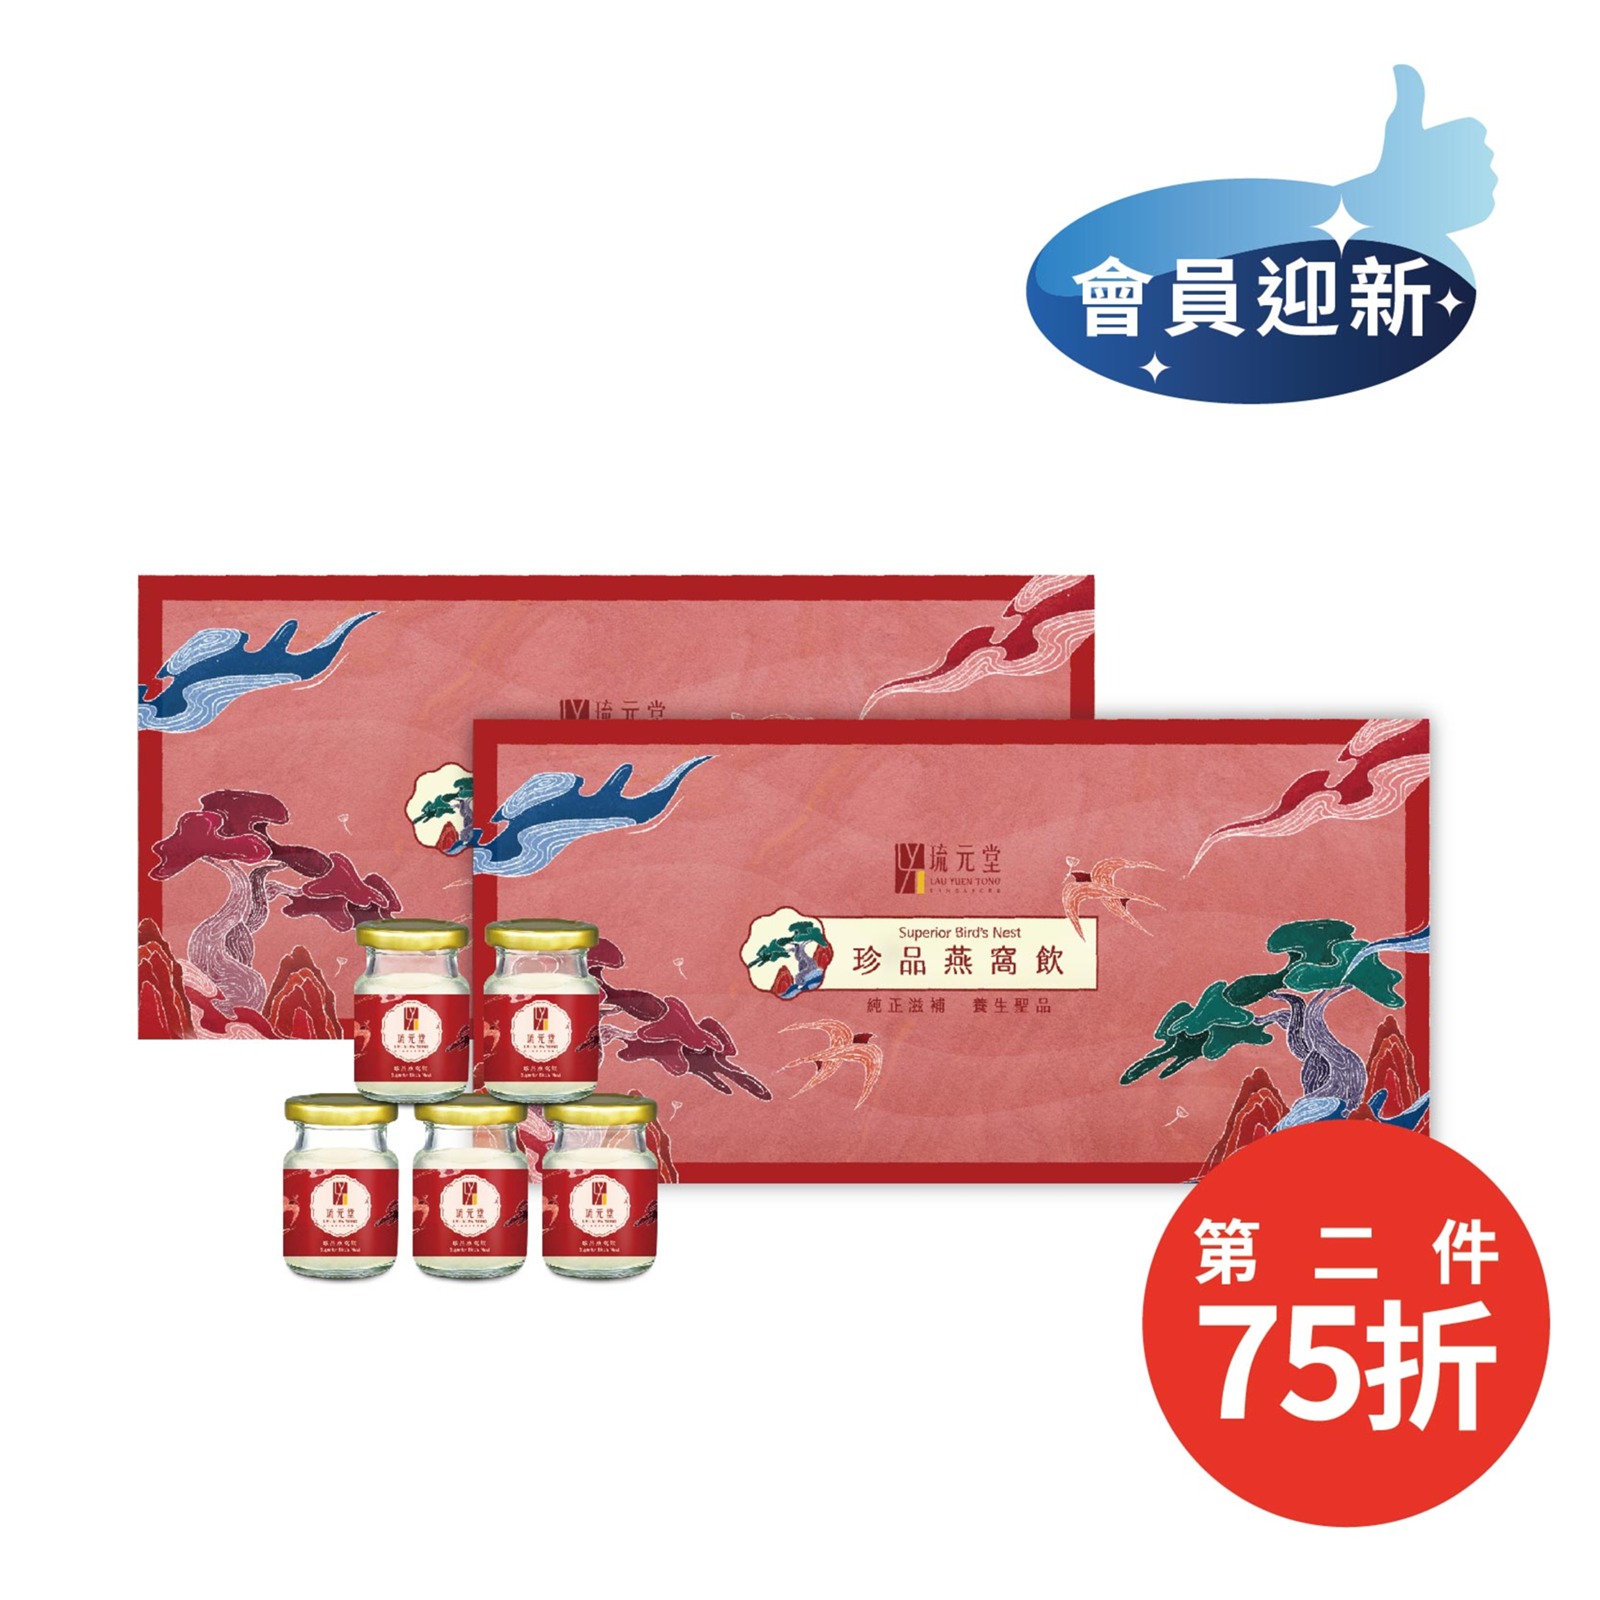 【琉元堂】冰糖燕窩-珍品燕窩飲5入禮盒